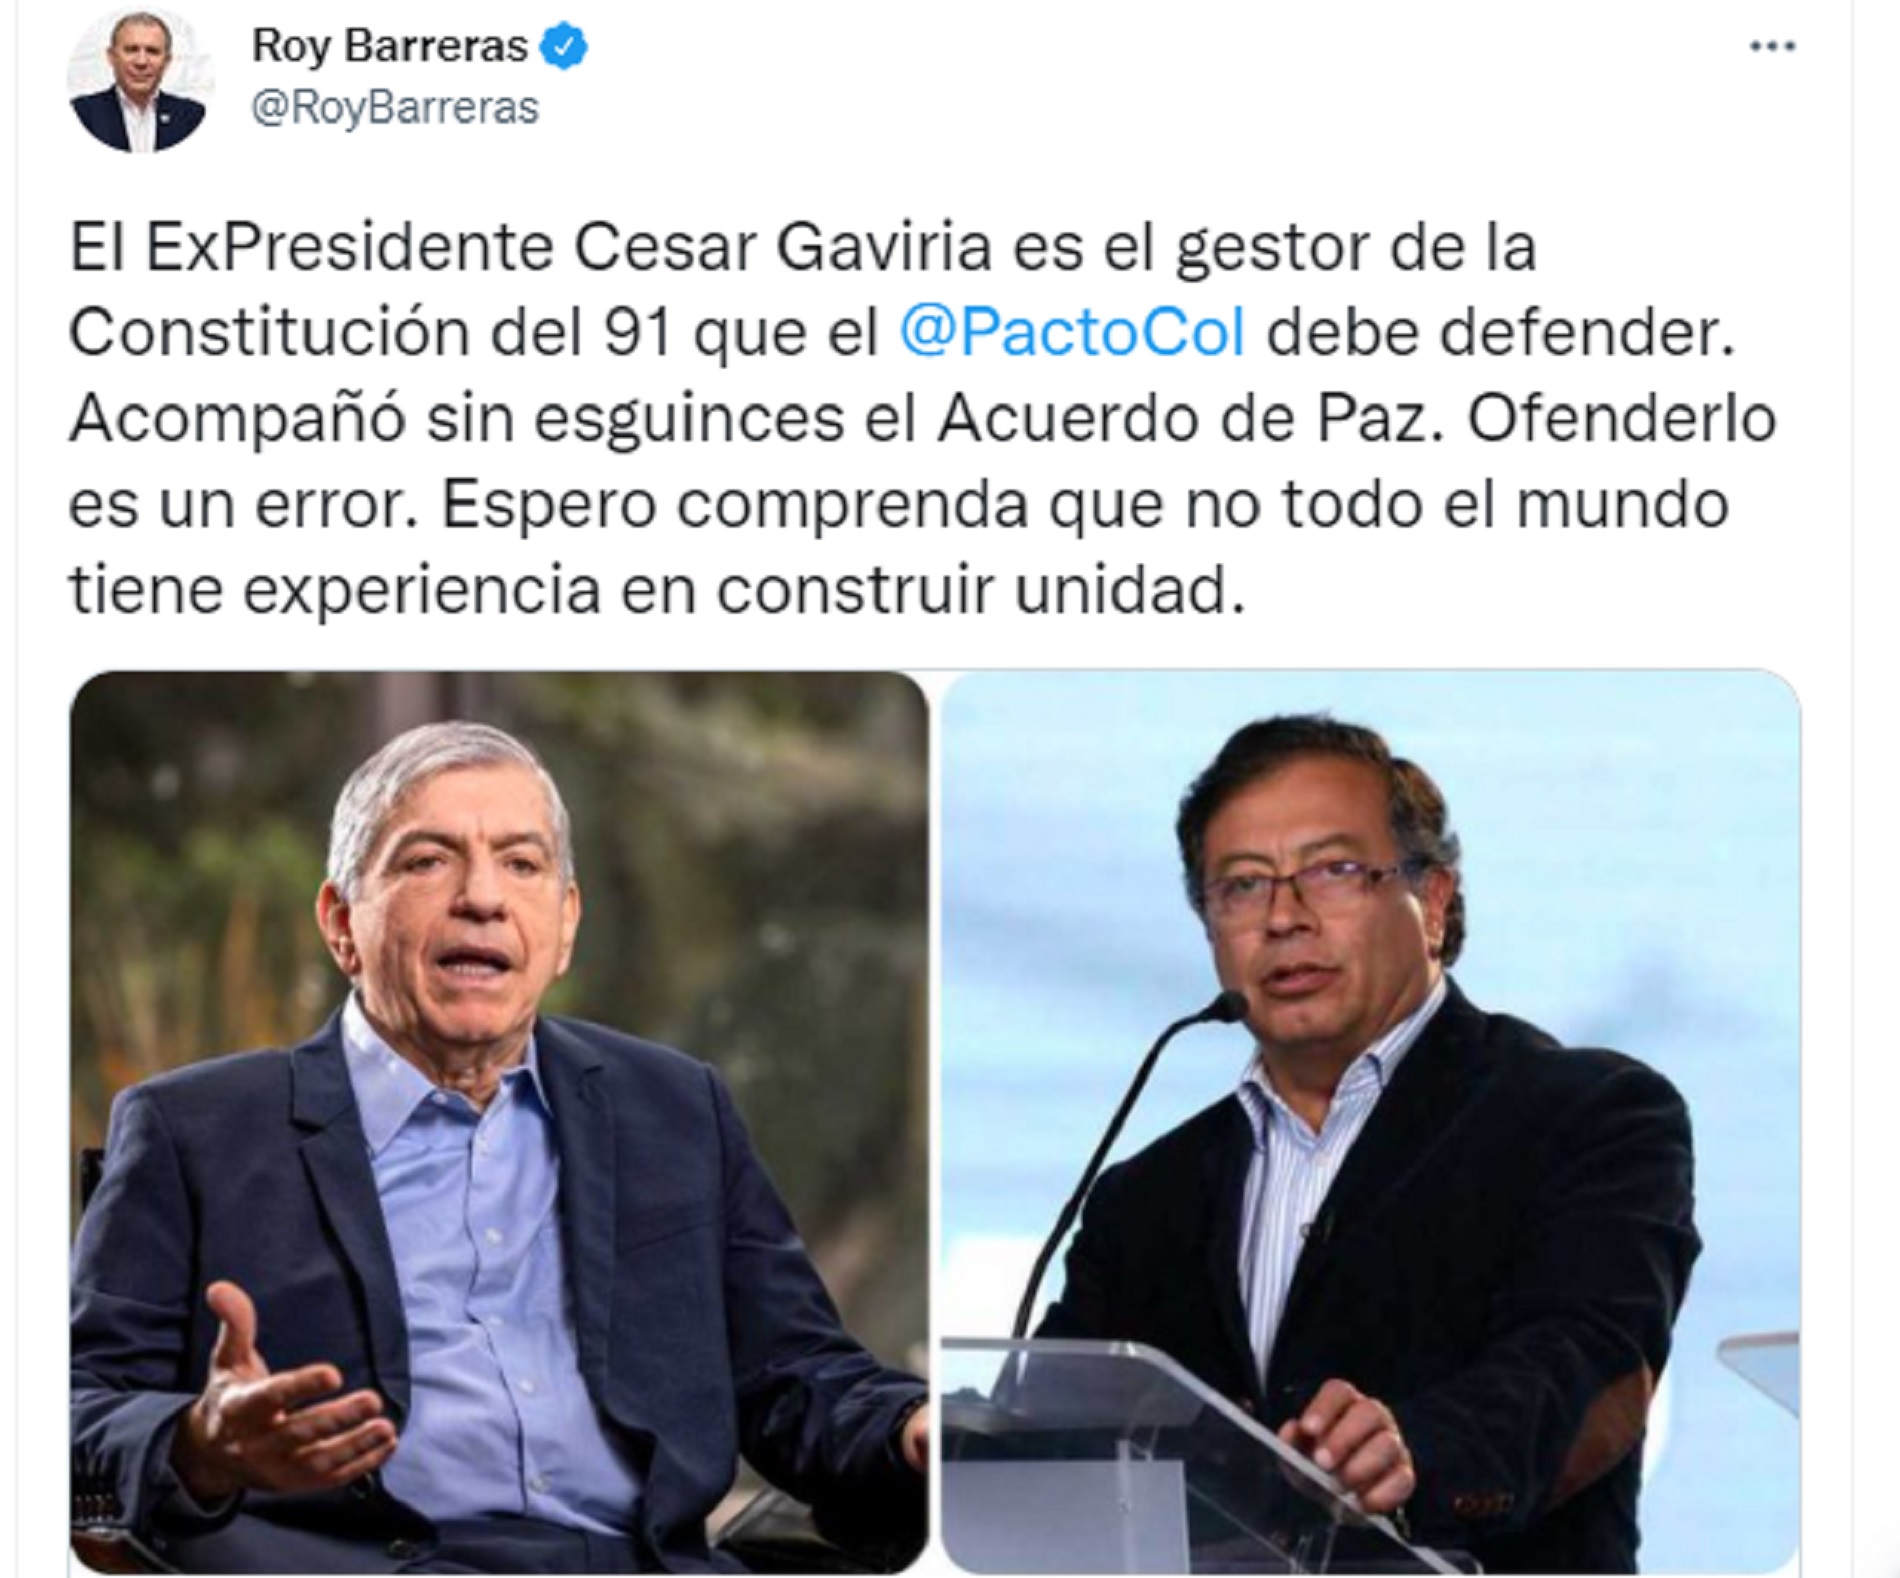 Tweet de Roy Barreras aludiendo a la crítica situación del Pacto Histórico ante la ruptura de conversaciones del Partido Liberal